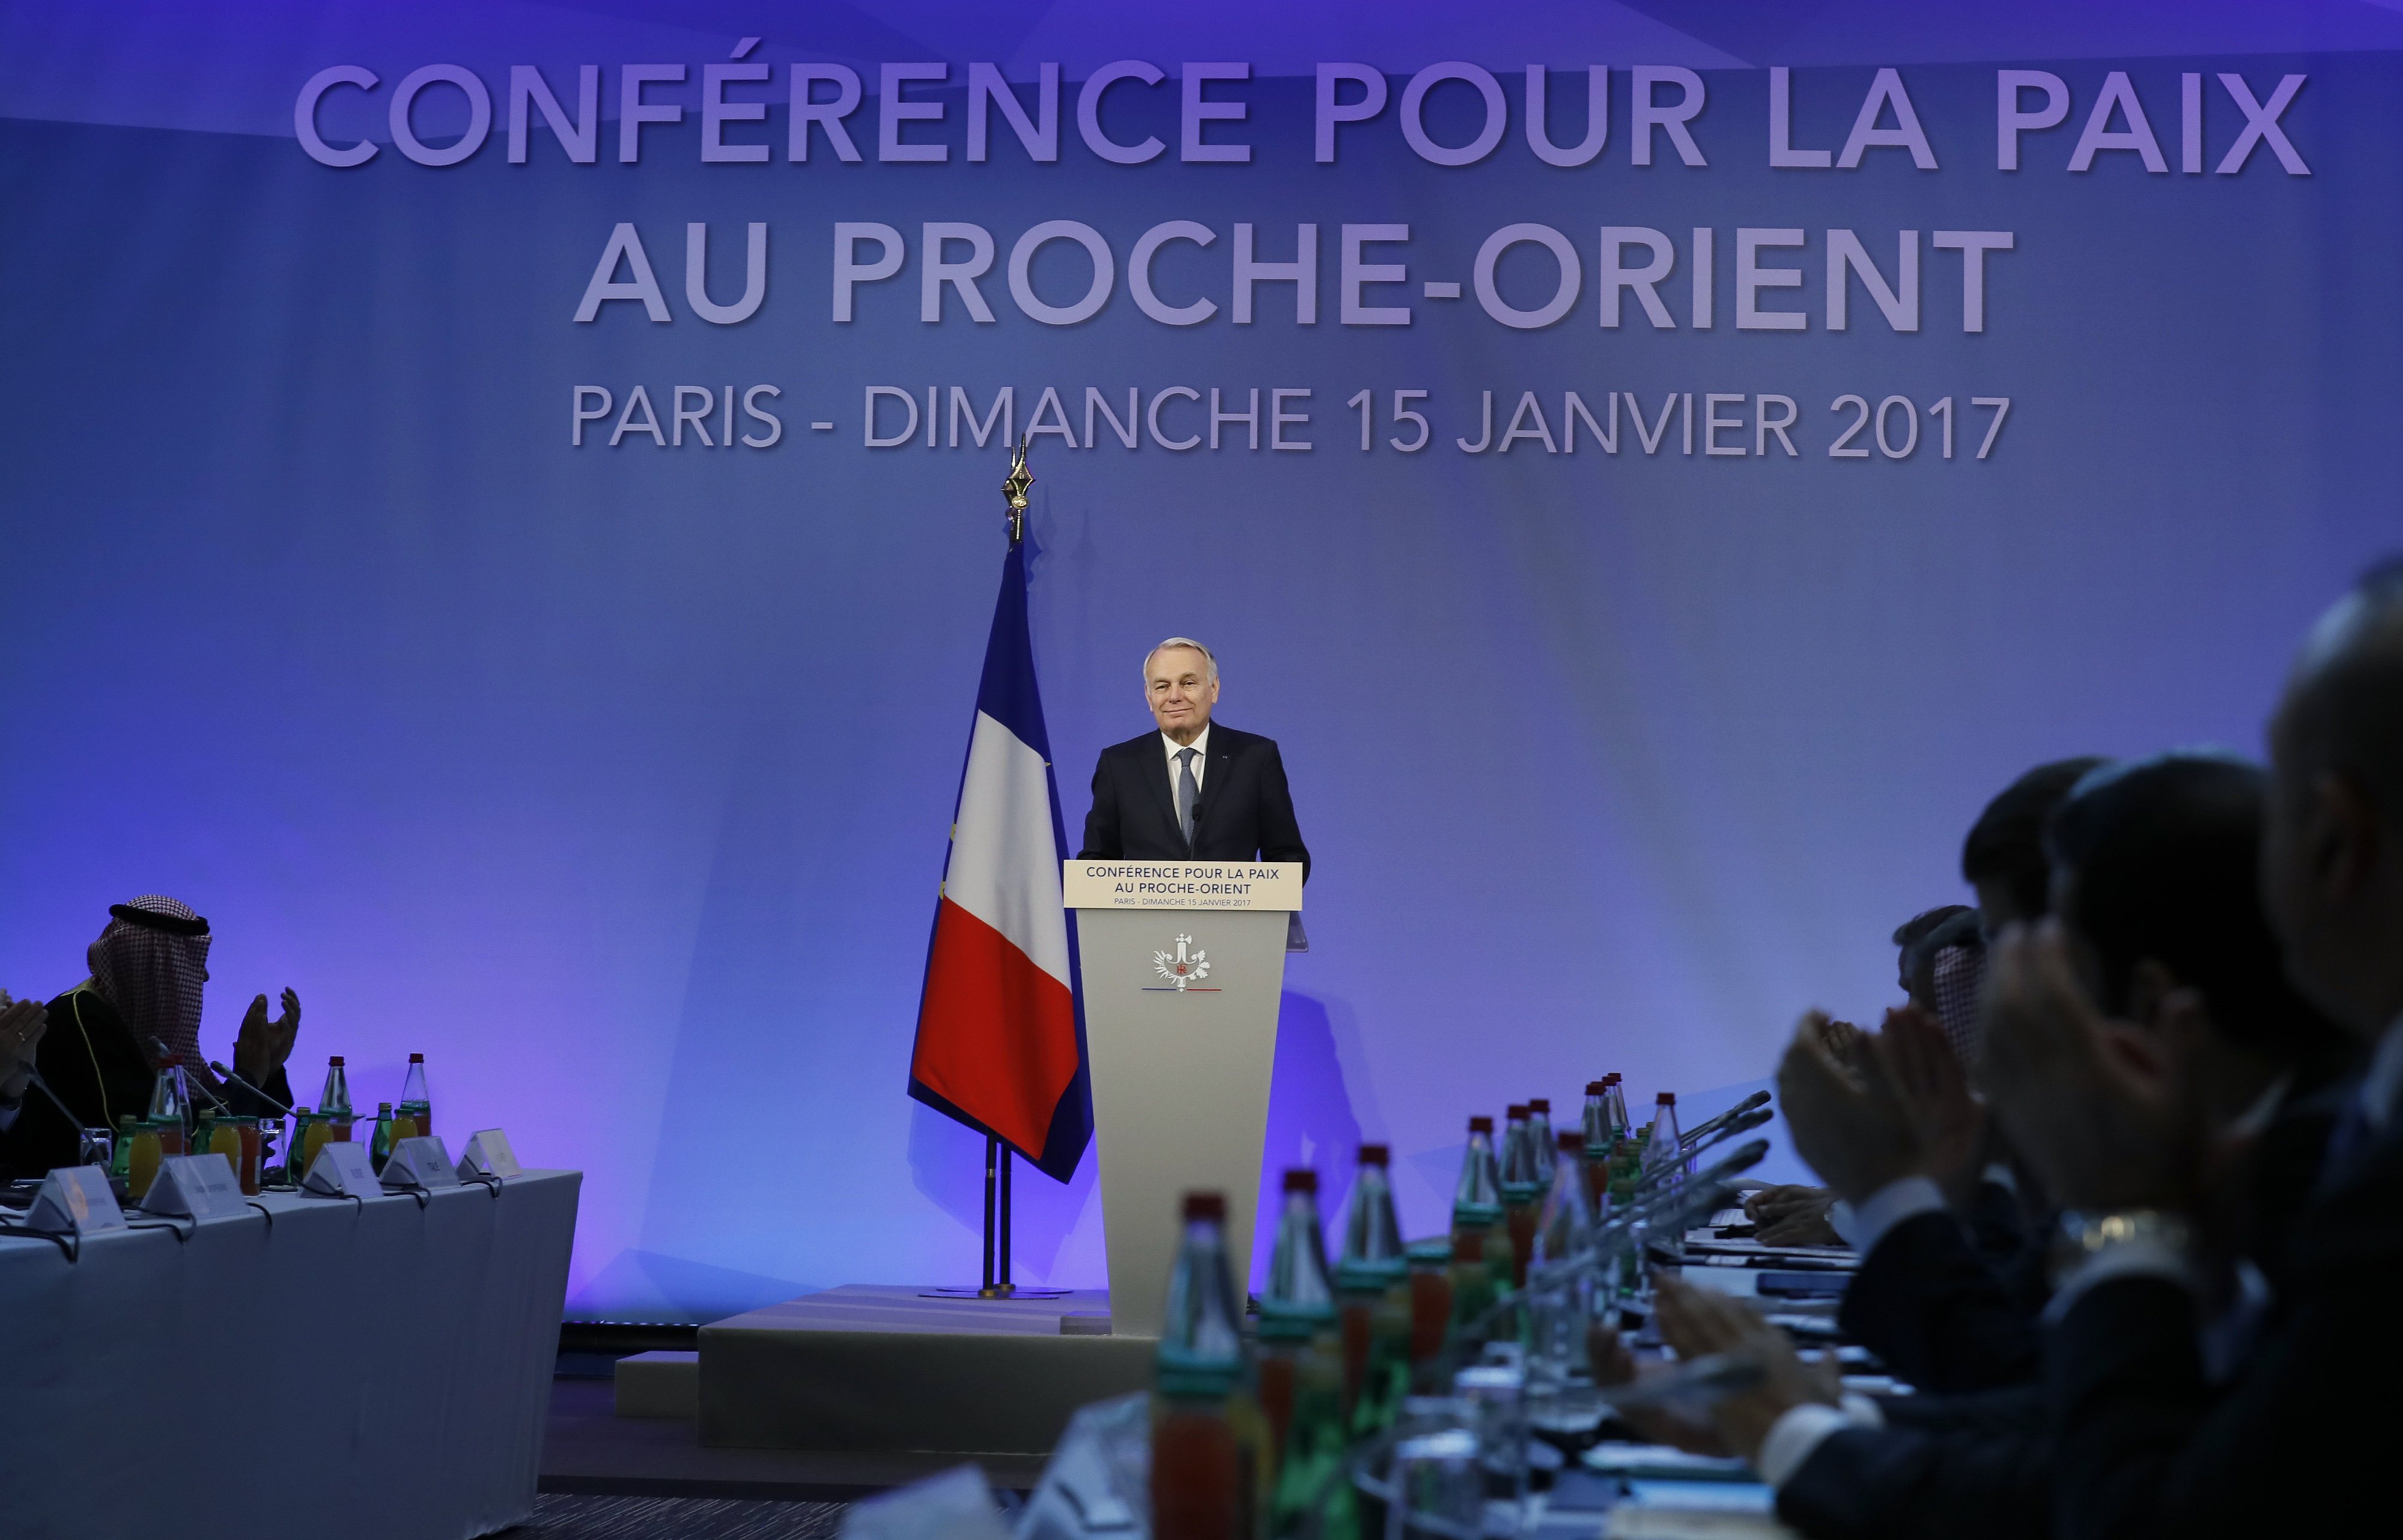 Para Francia, las críticas de Israel a esta conferencia solo demuestran una falta de entendimiento.